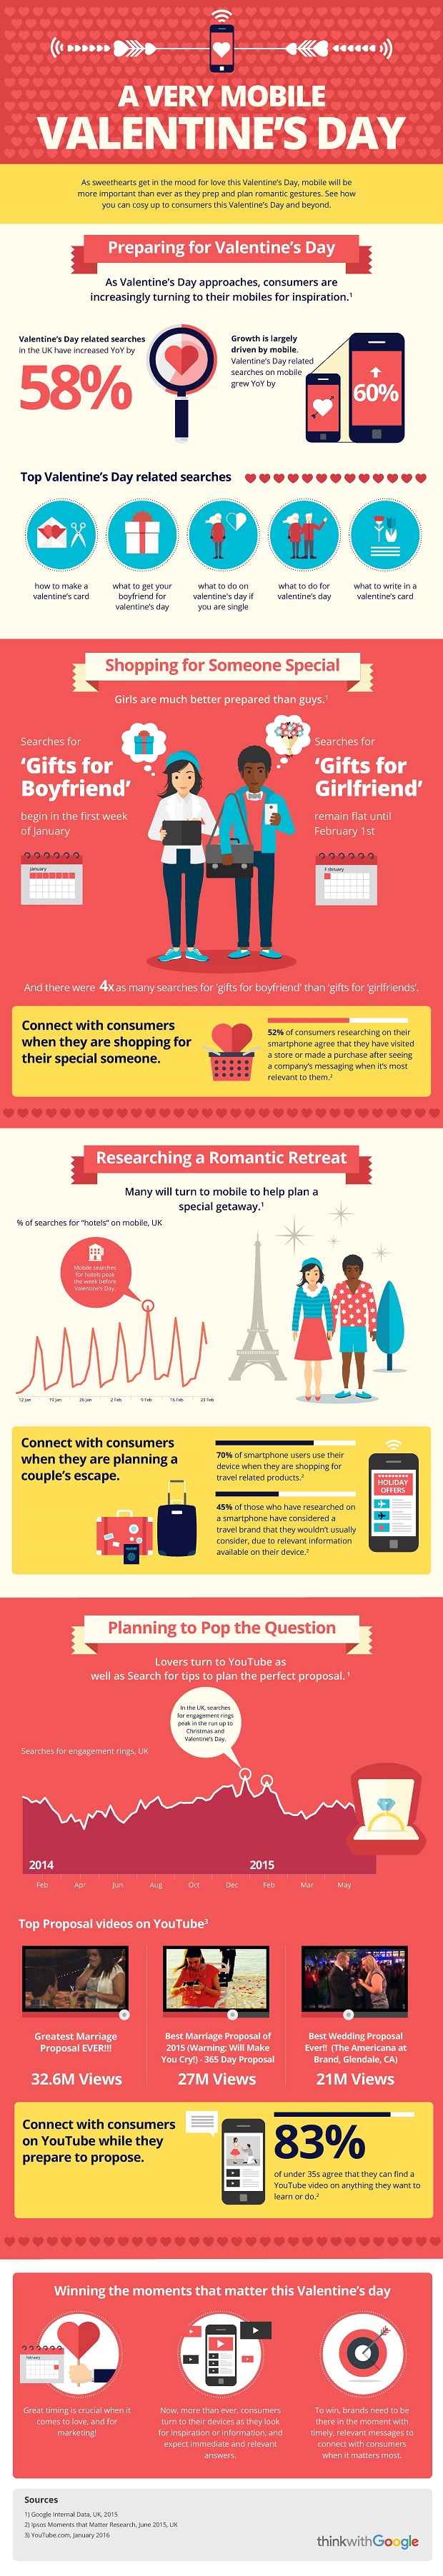 Valentines_infographic_UK